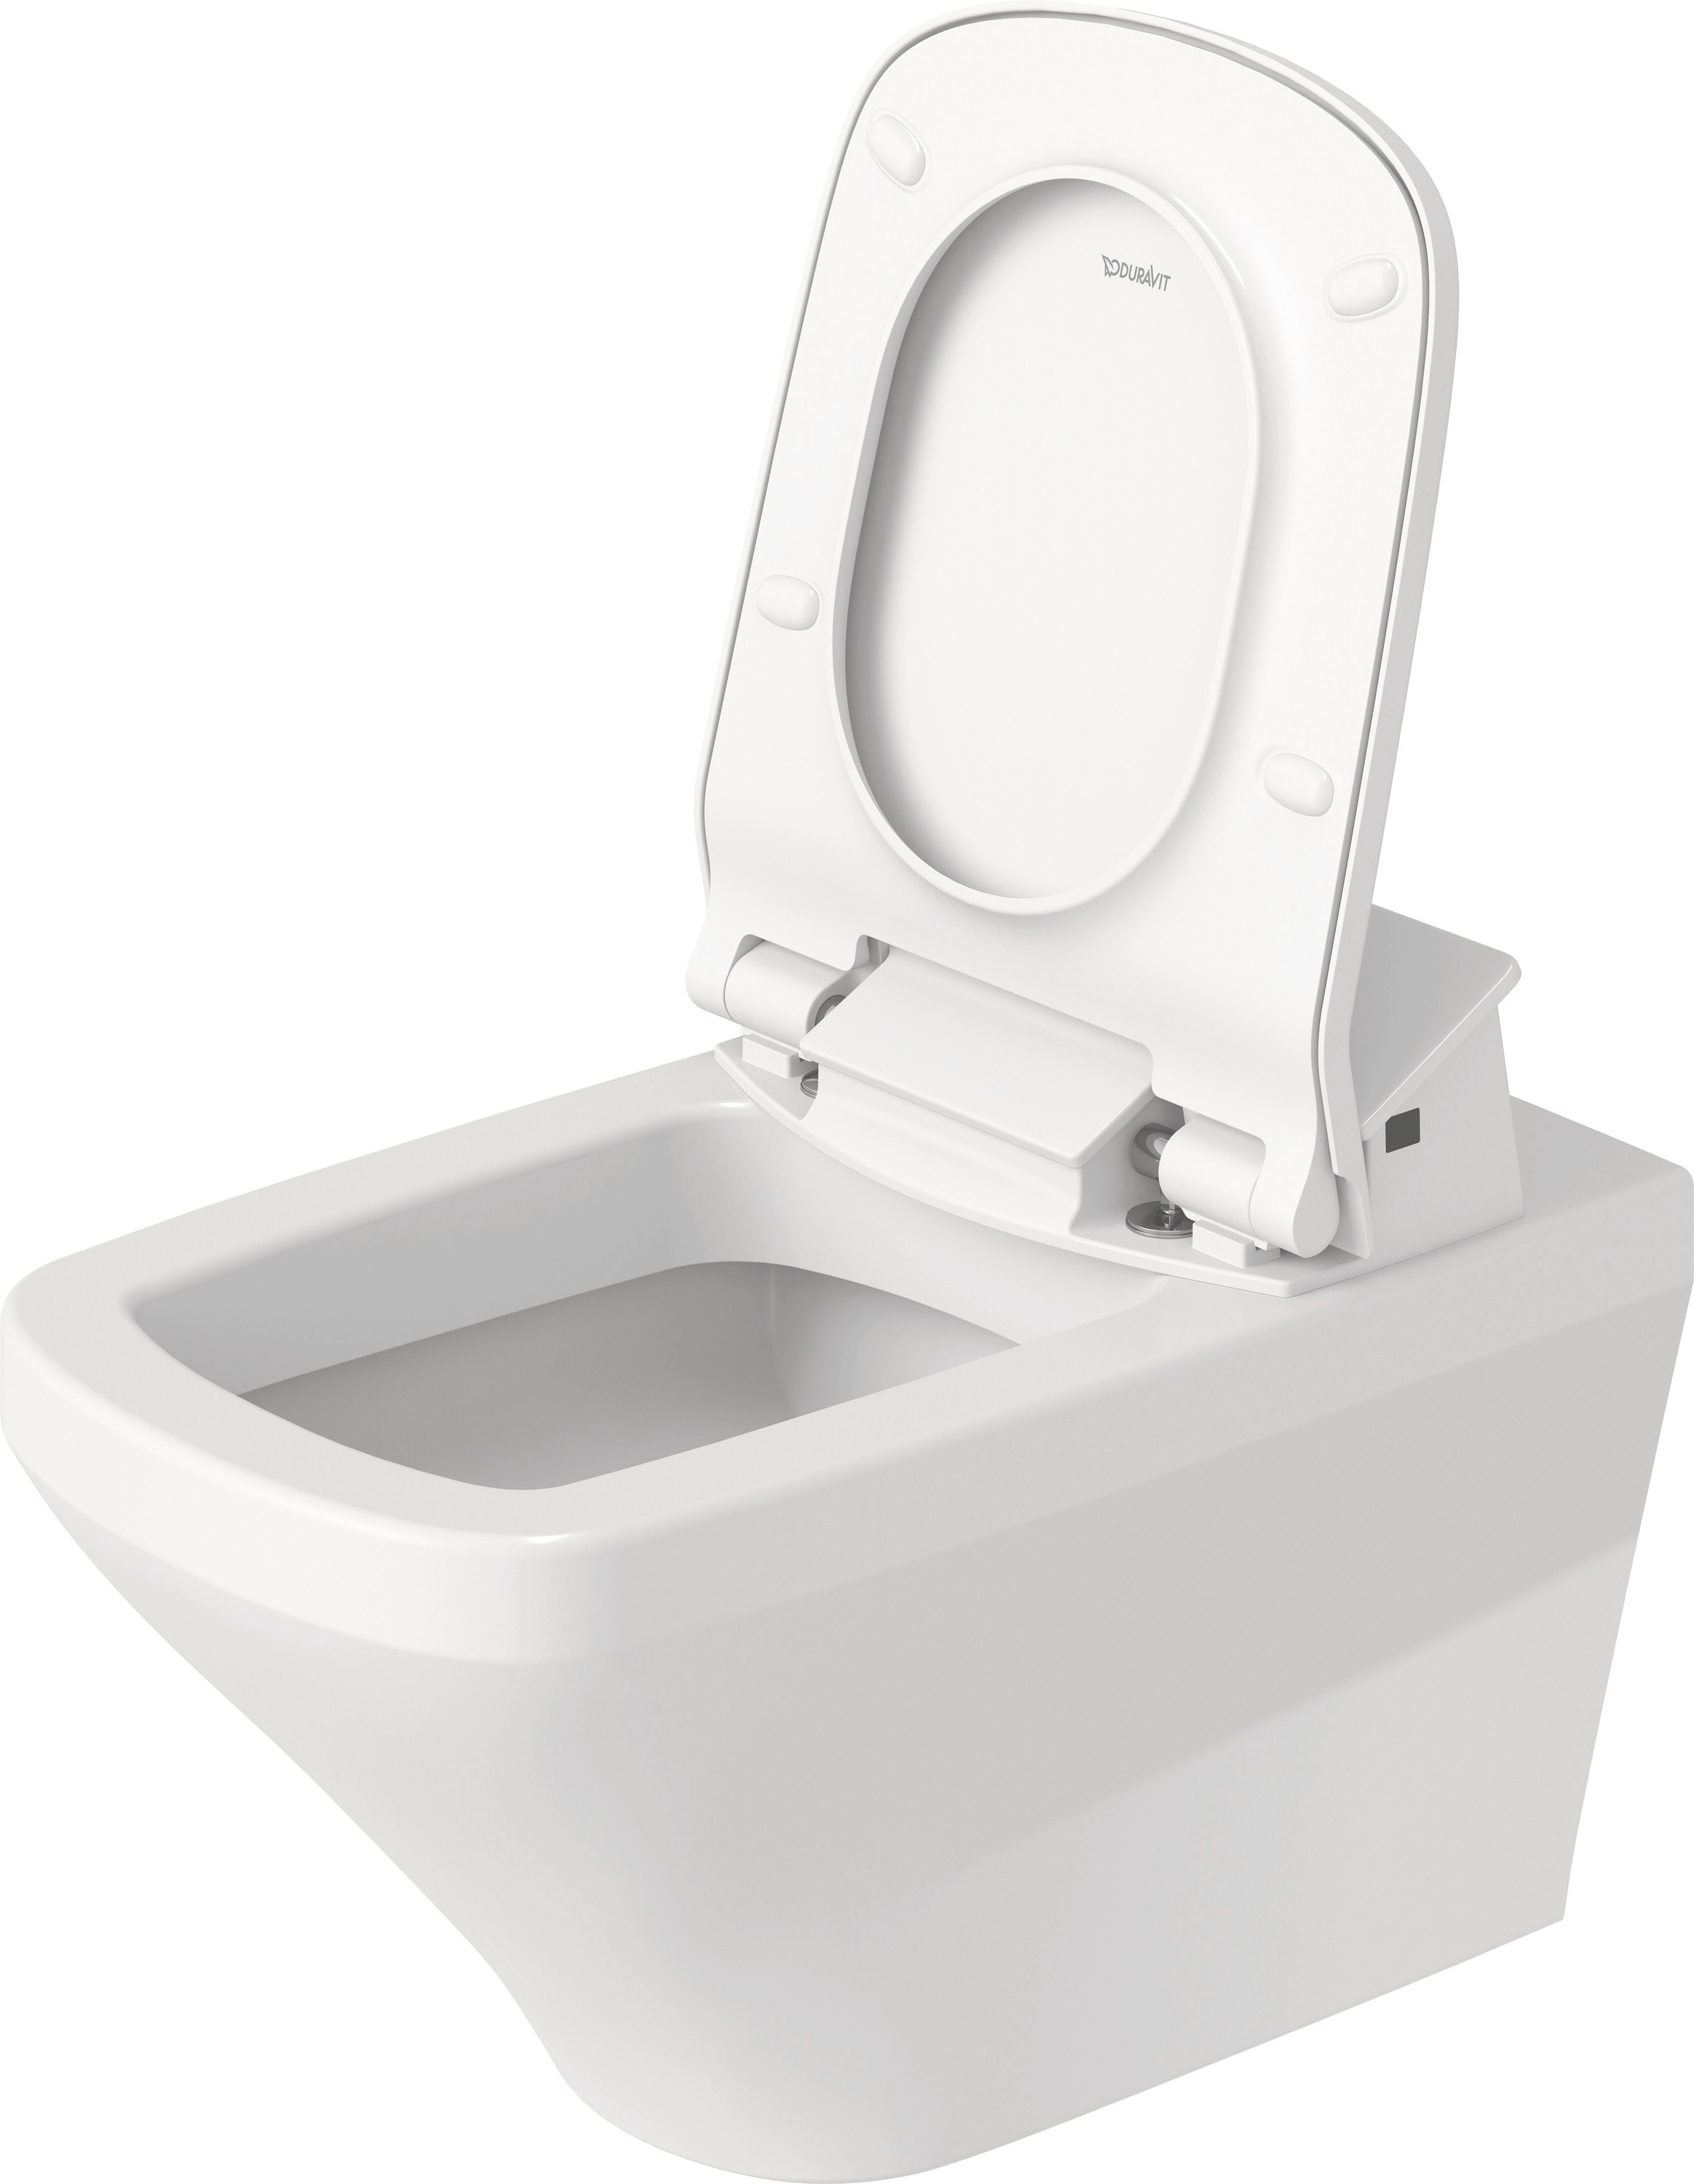 Wand-WC DuraStyle 620 mm, Tiefspüler Durafix, fürSW mitverd.Anschl., weiß, HYG